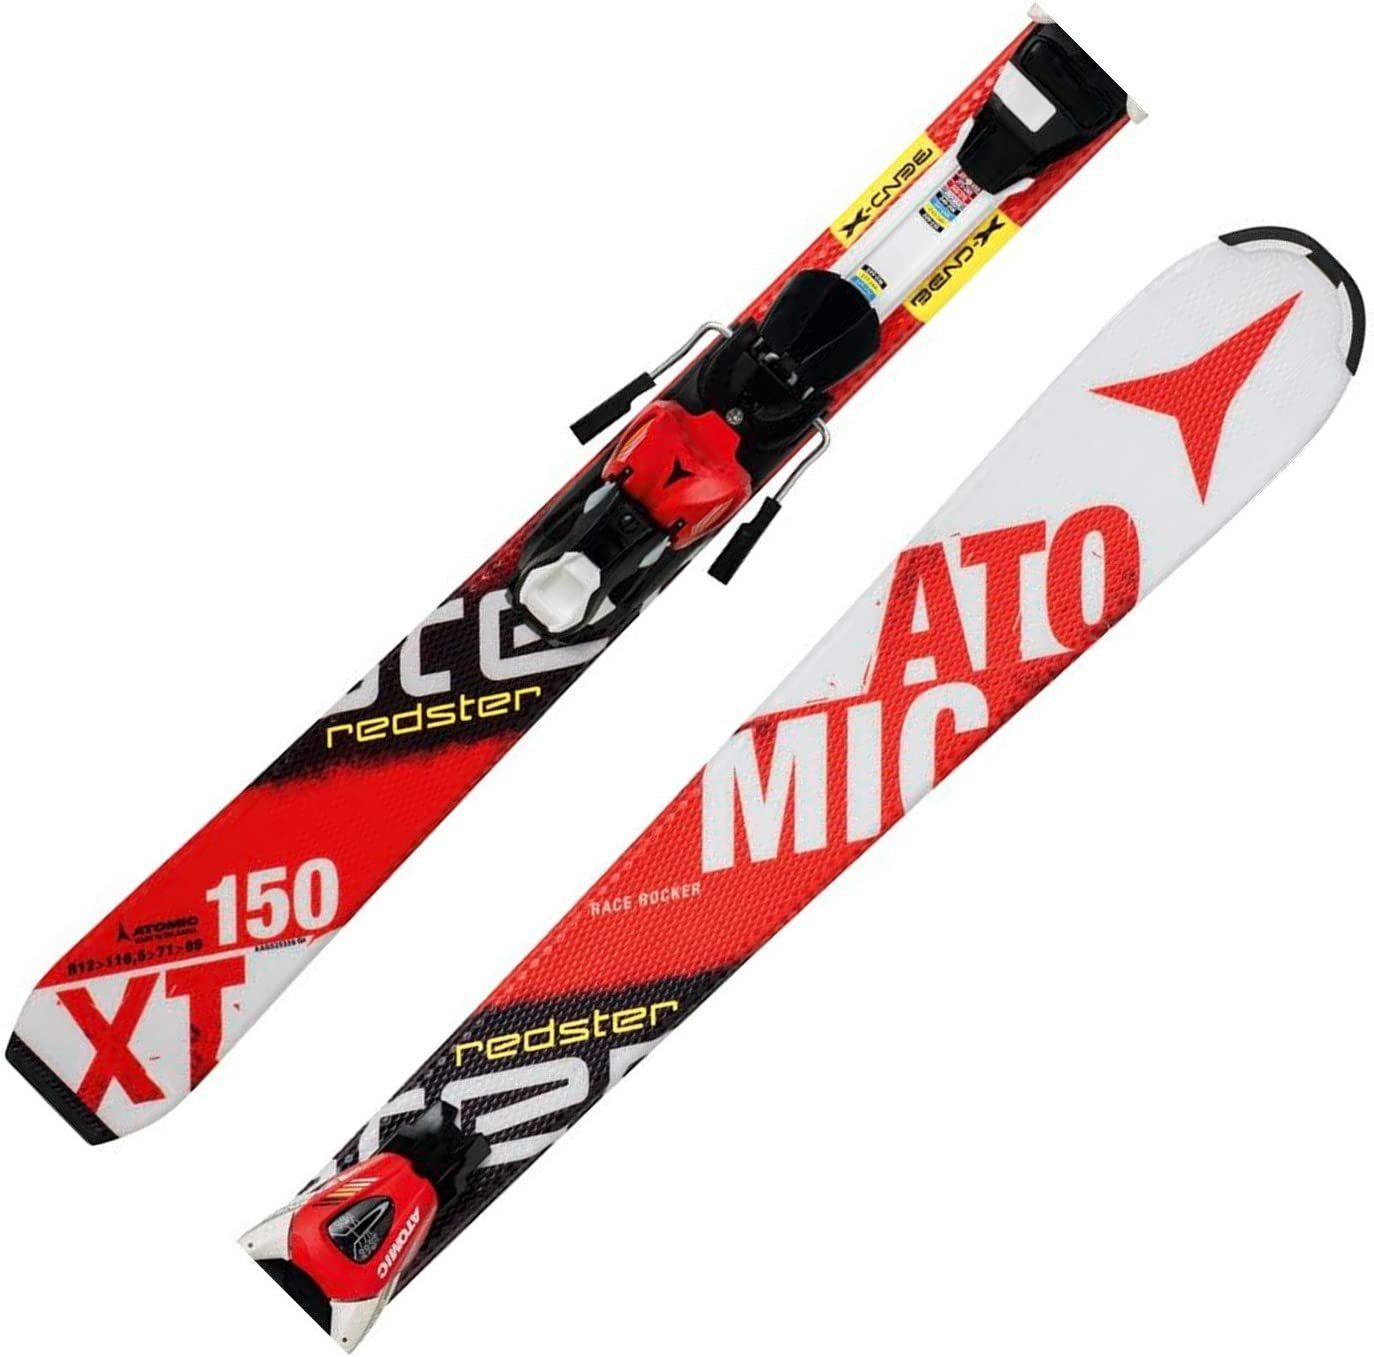 & 7 RED/WHITE JR Atomic Ski REDSTER XTE III